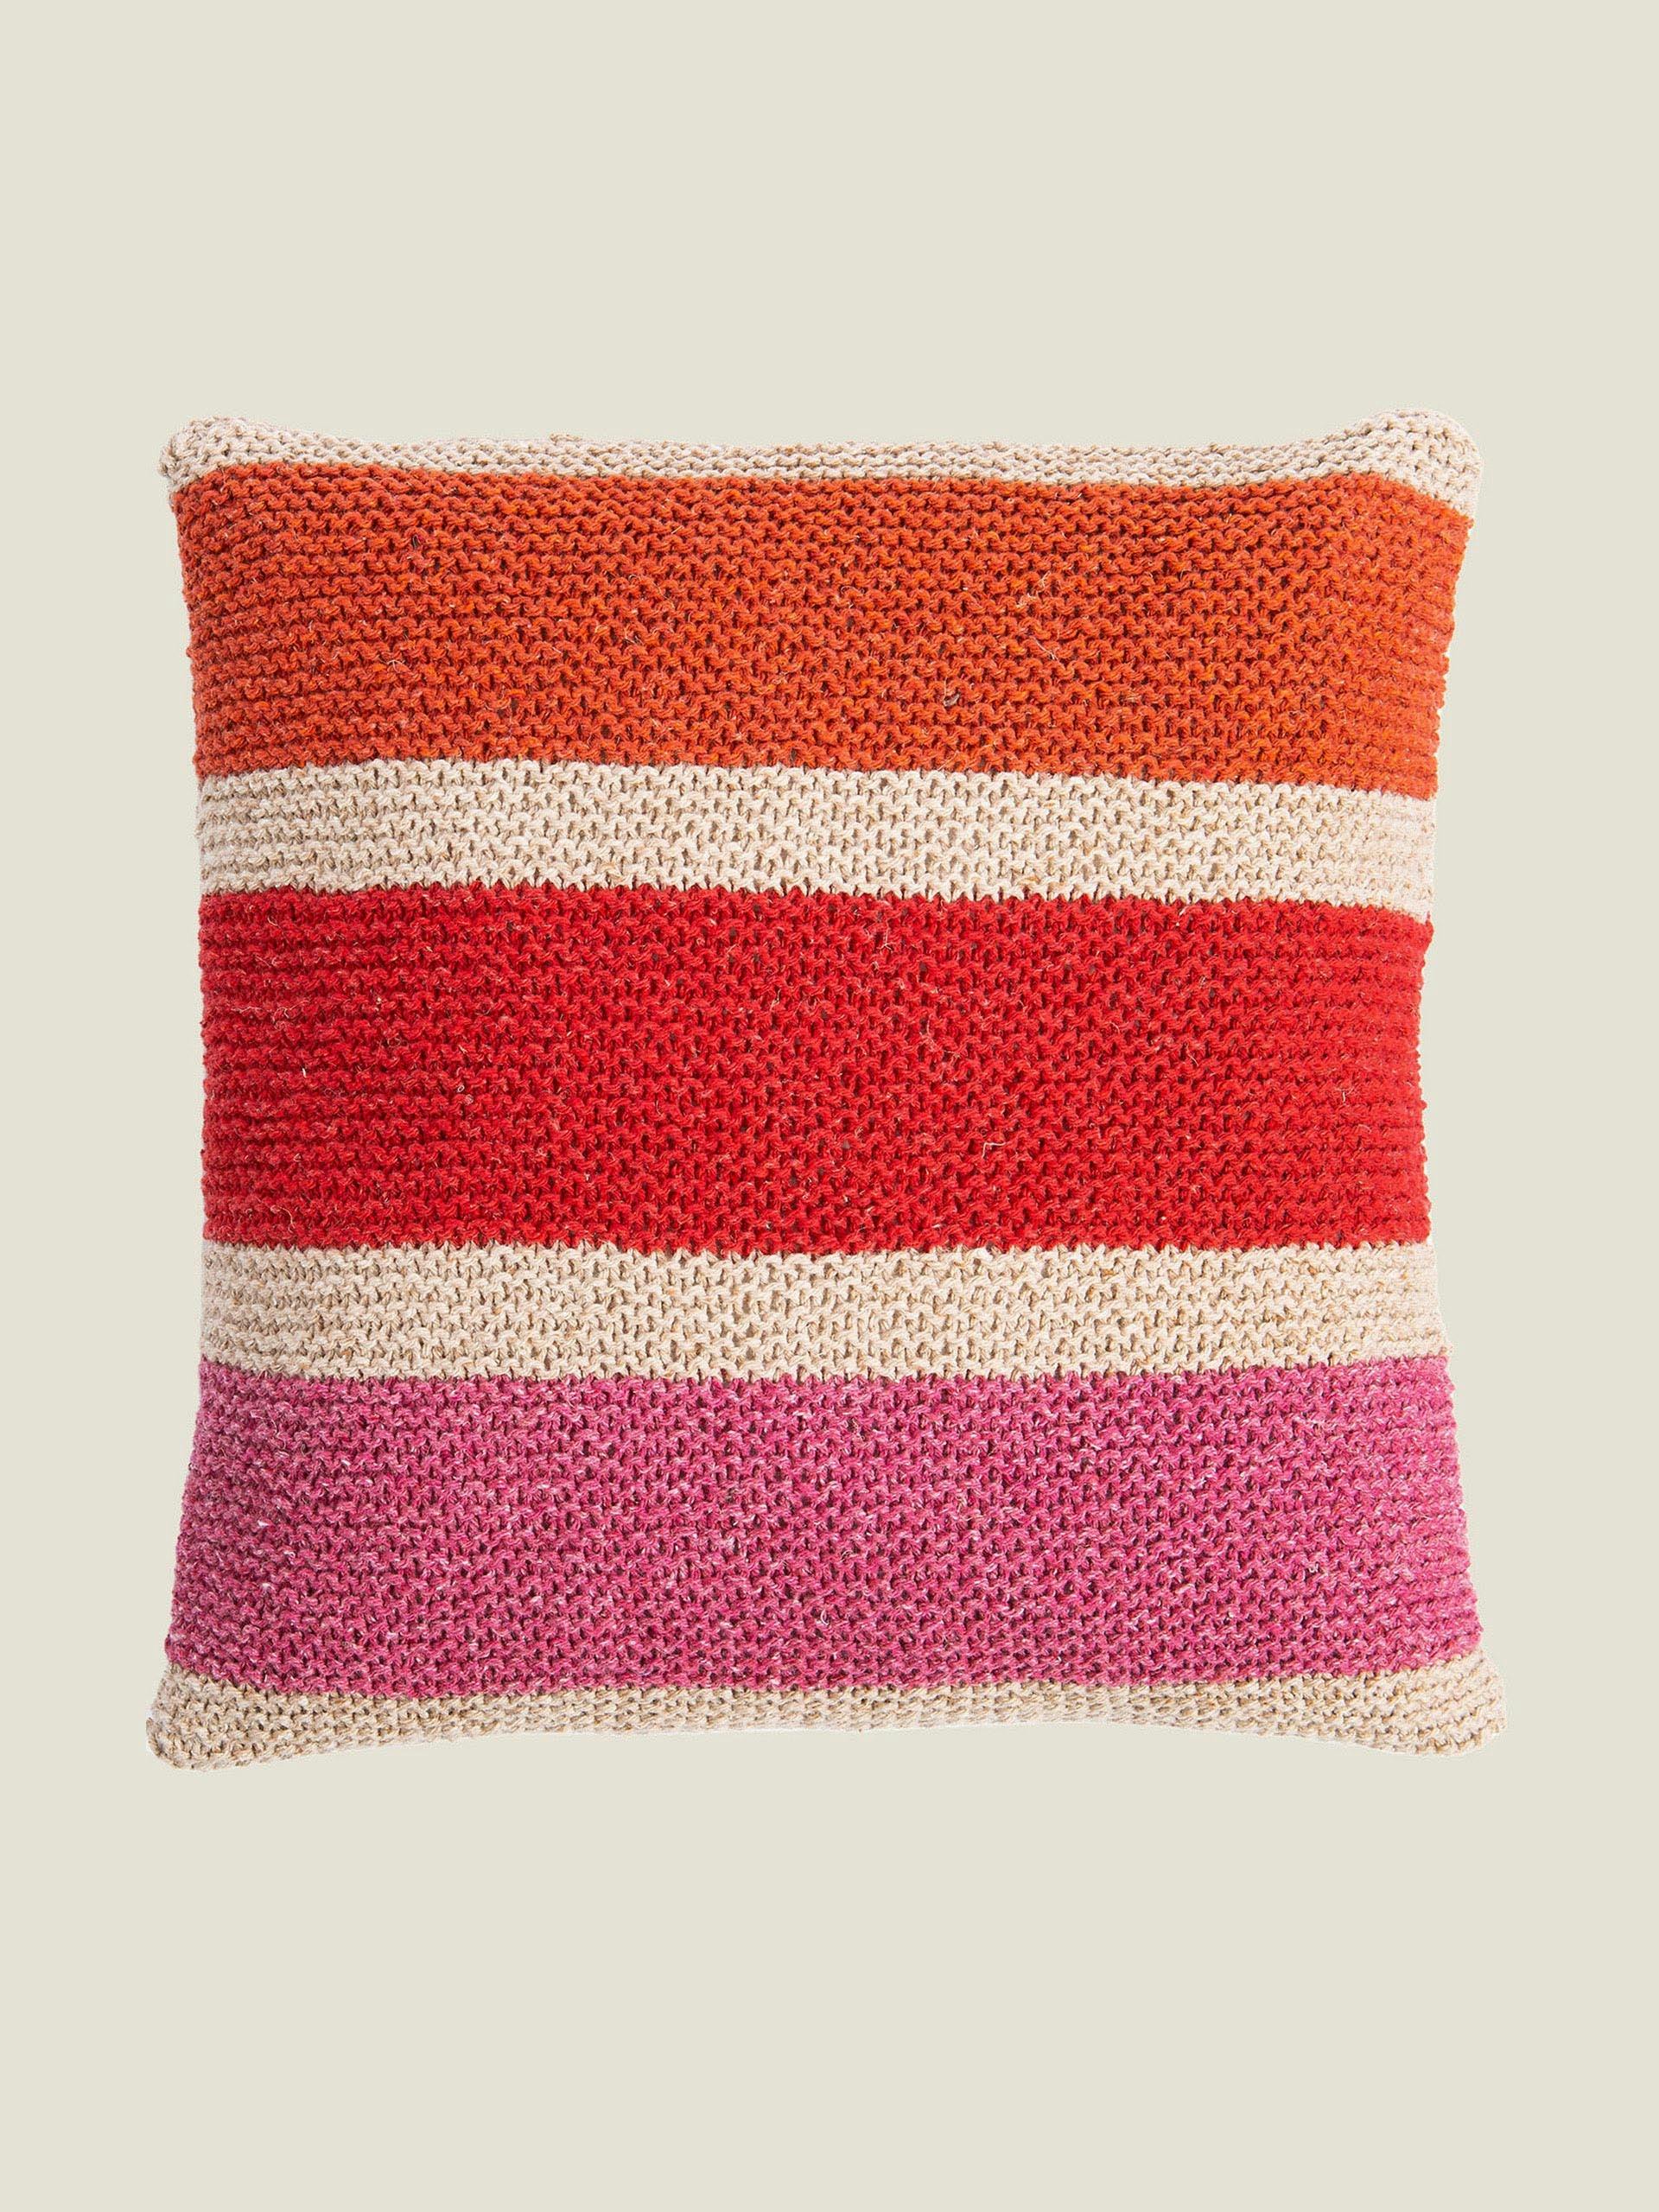 Rainbow cushion knitting kit